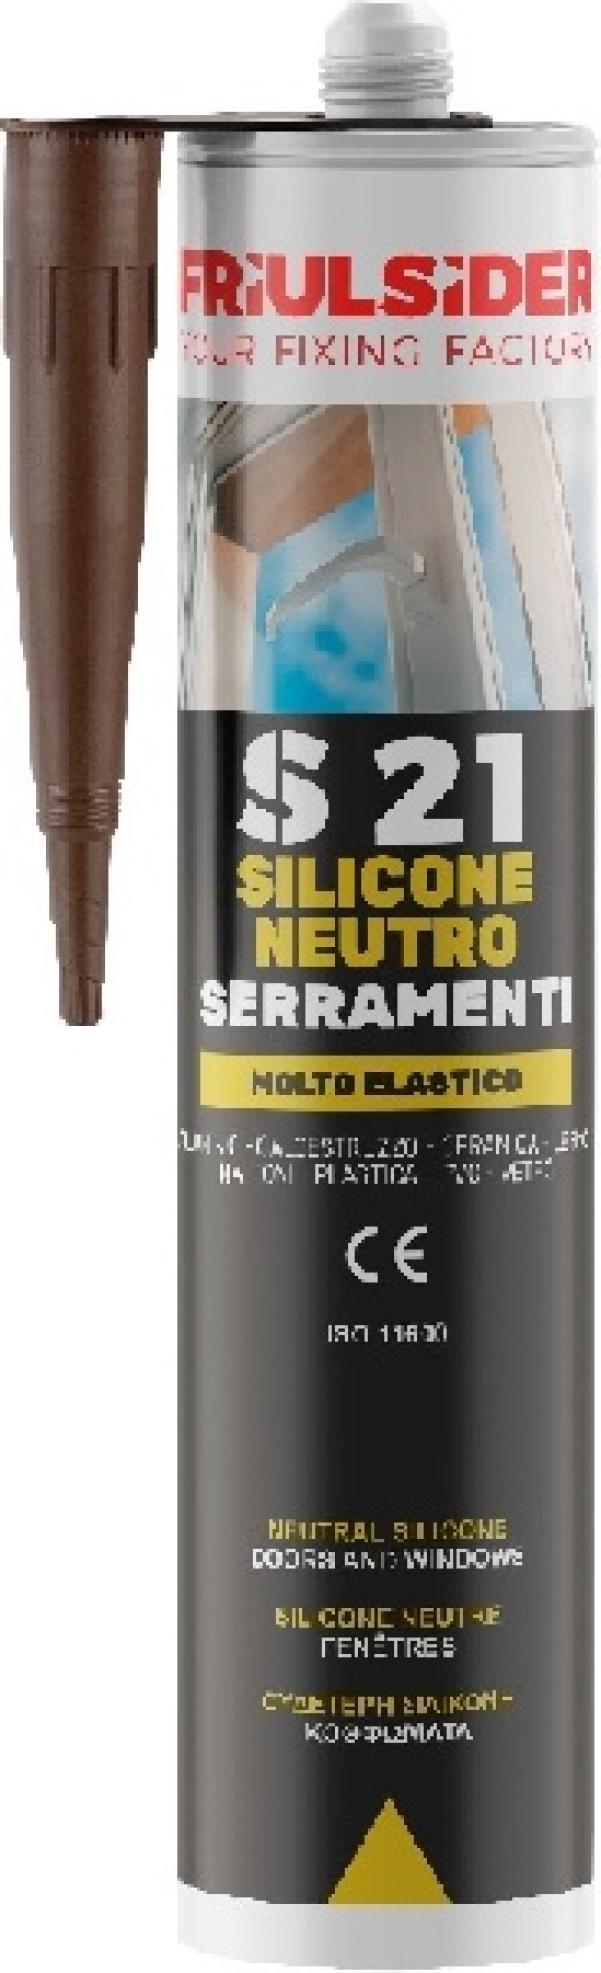 Silicone neutro serramenti alluminio ral9006 310ml Friulsider S2109